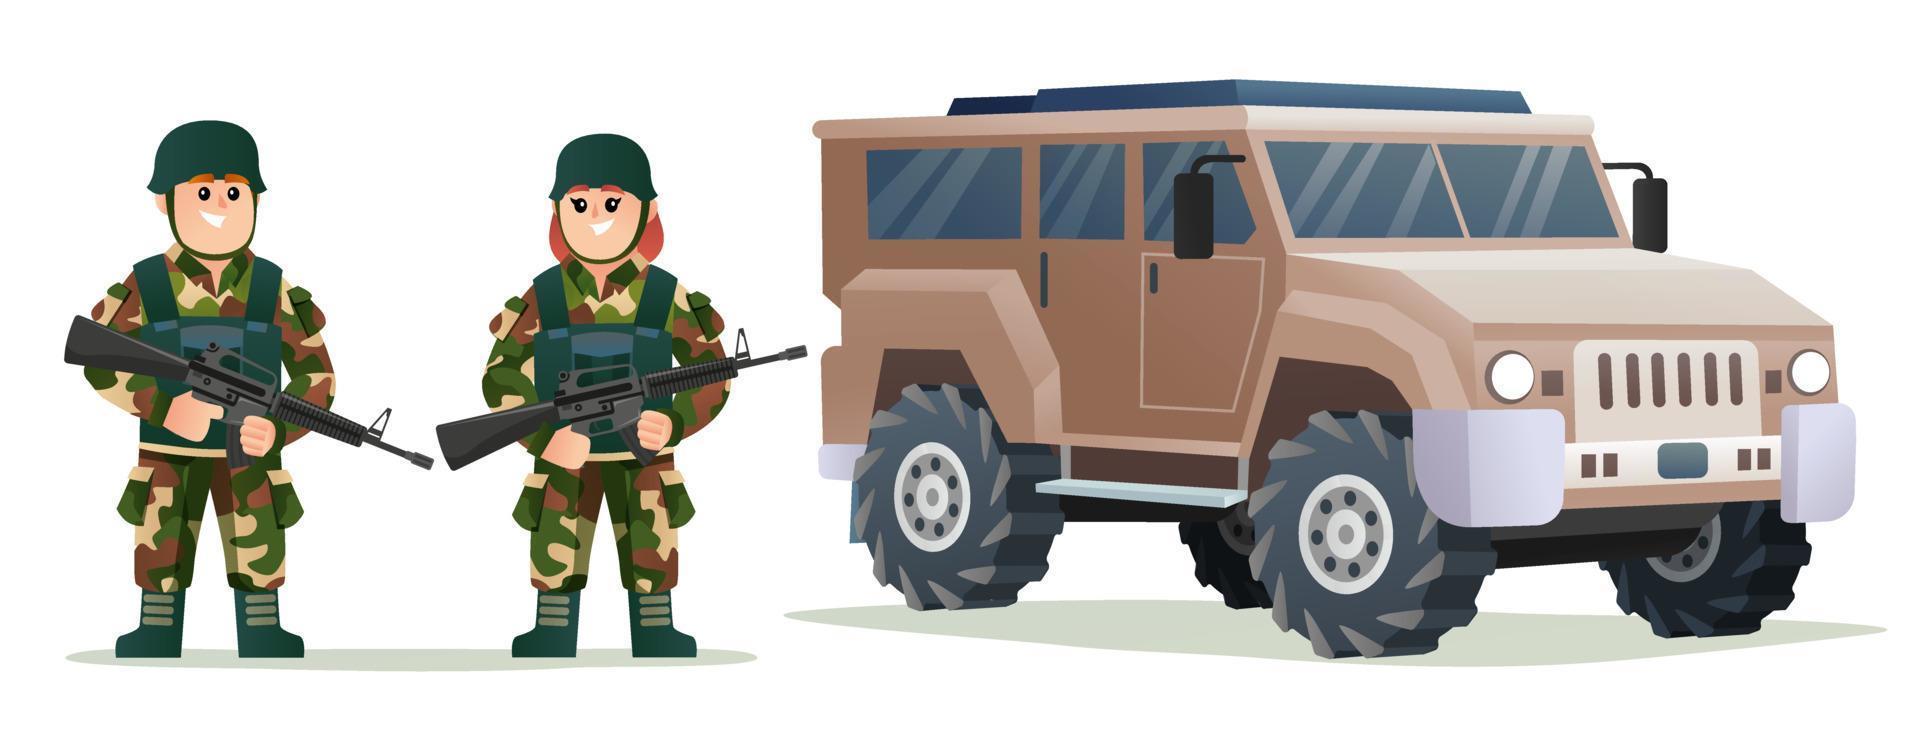 lindos soldados del ejército de niños y niñas sosteniendo armas con ilustración de dibujos animados de vehículos militares vector